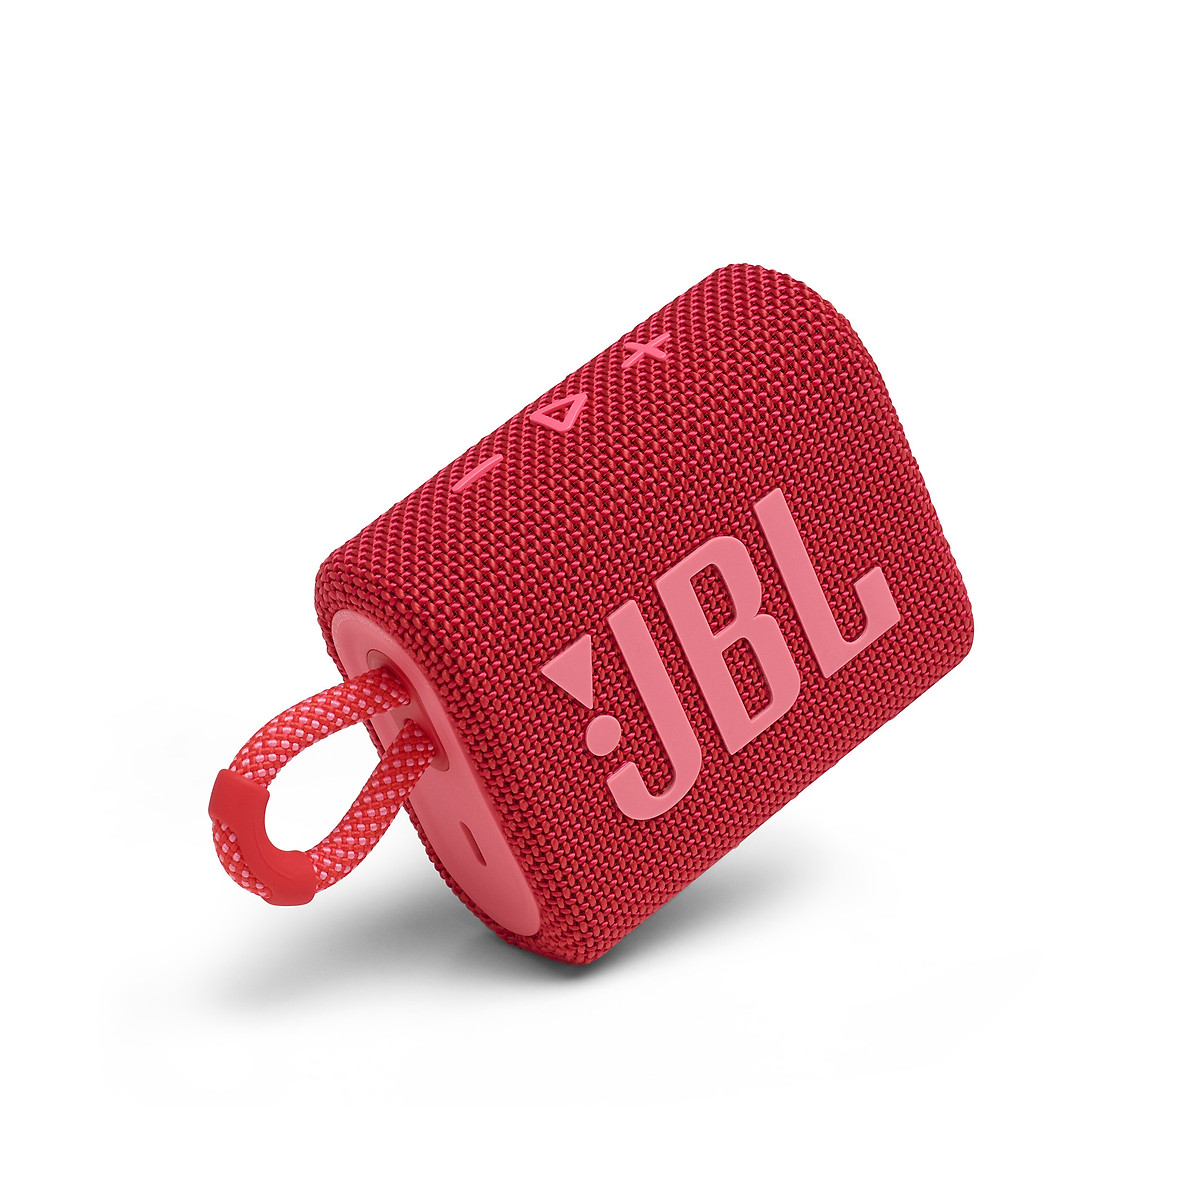 Loa Bluetooth JBL Go 3 - Hàng chính hãng